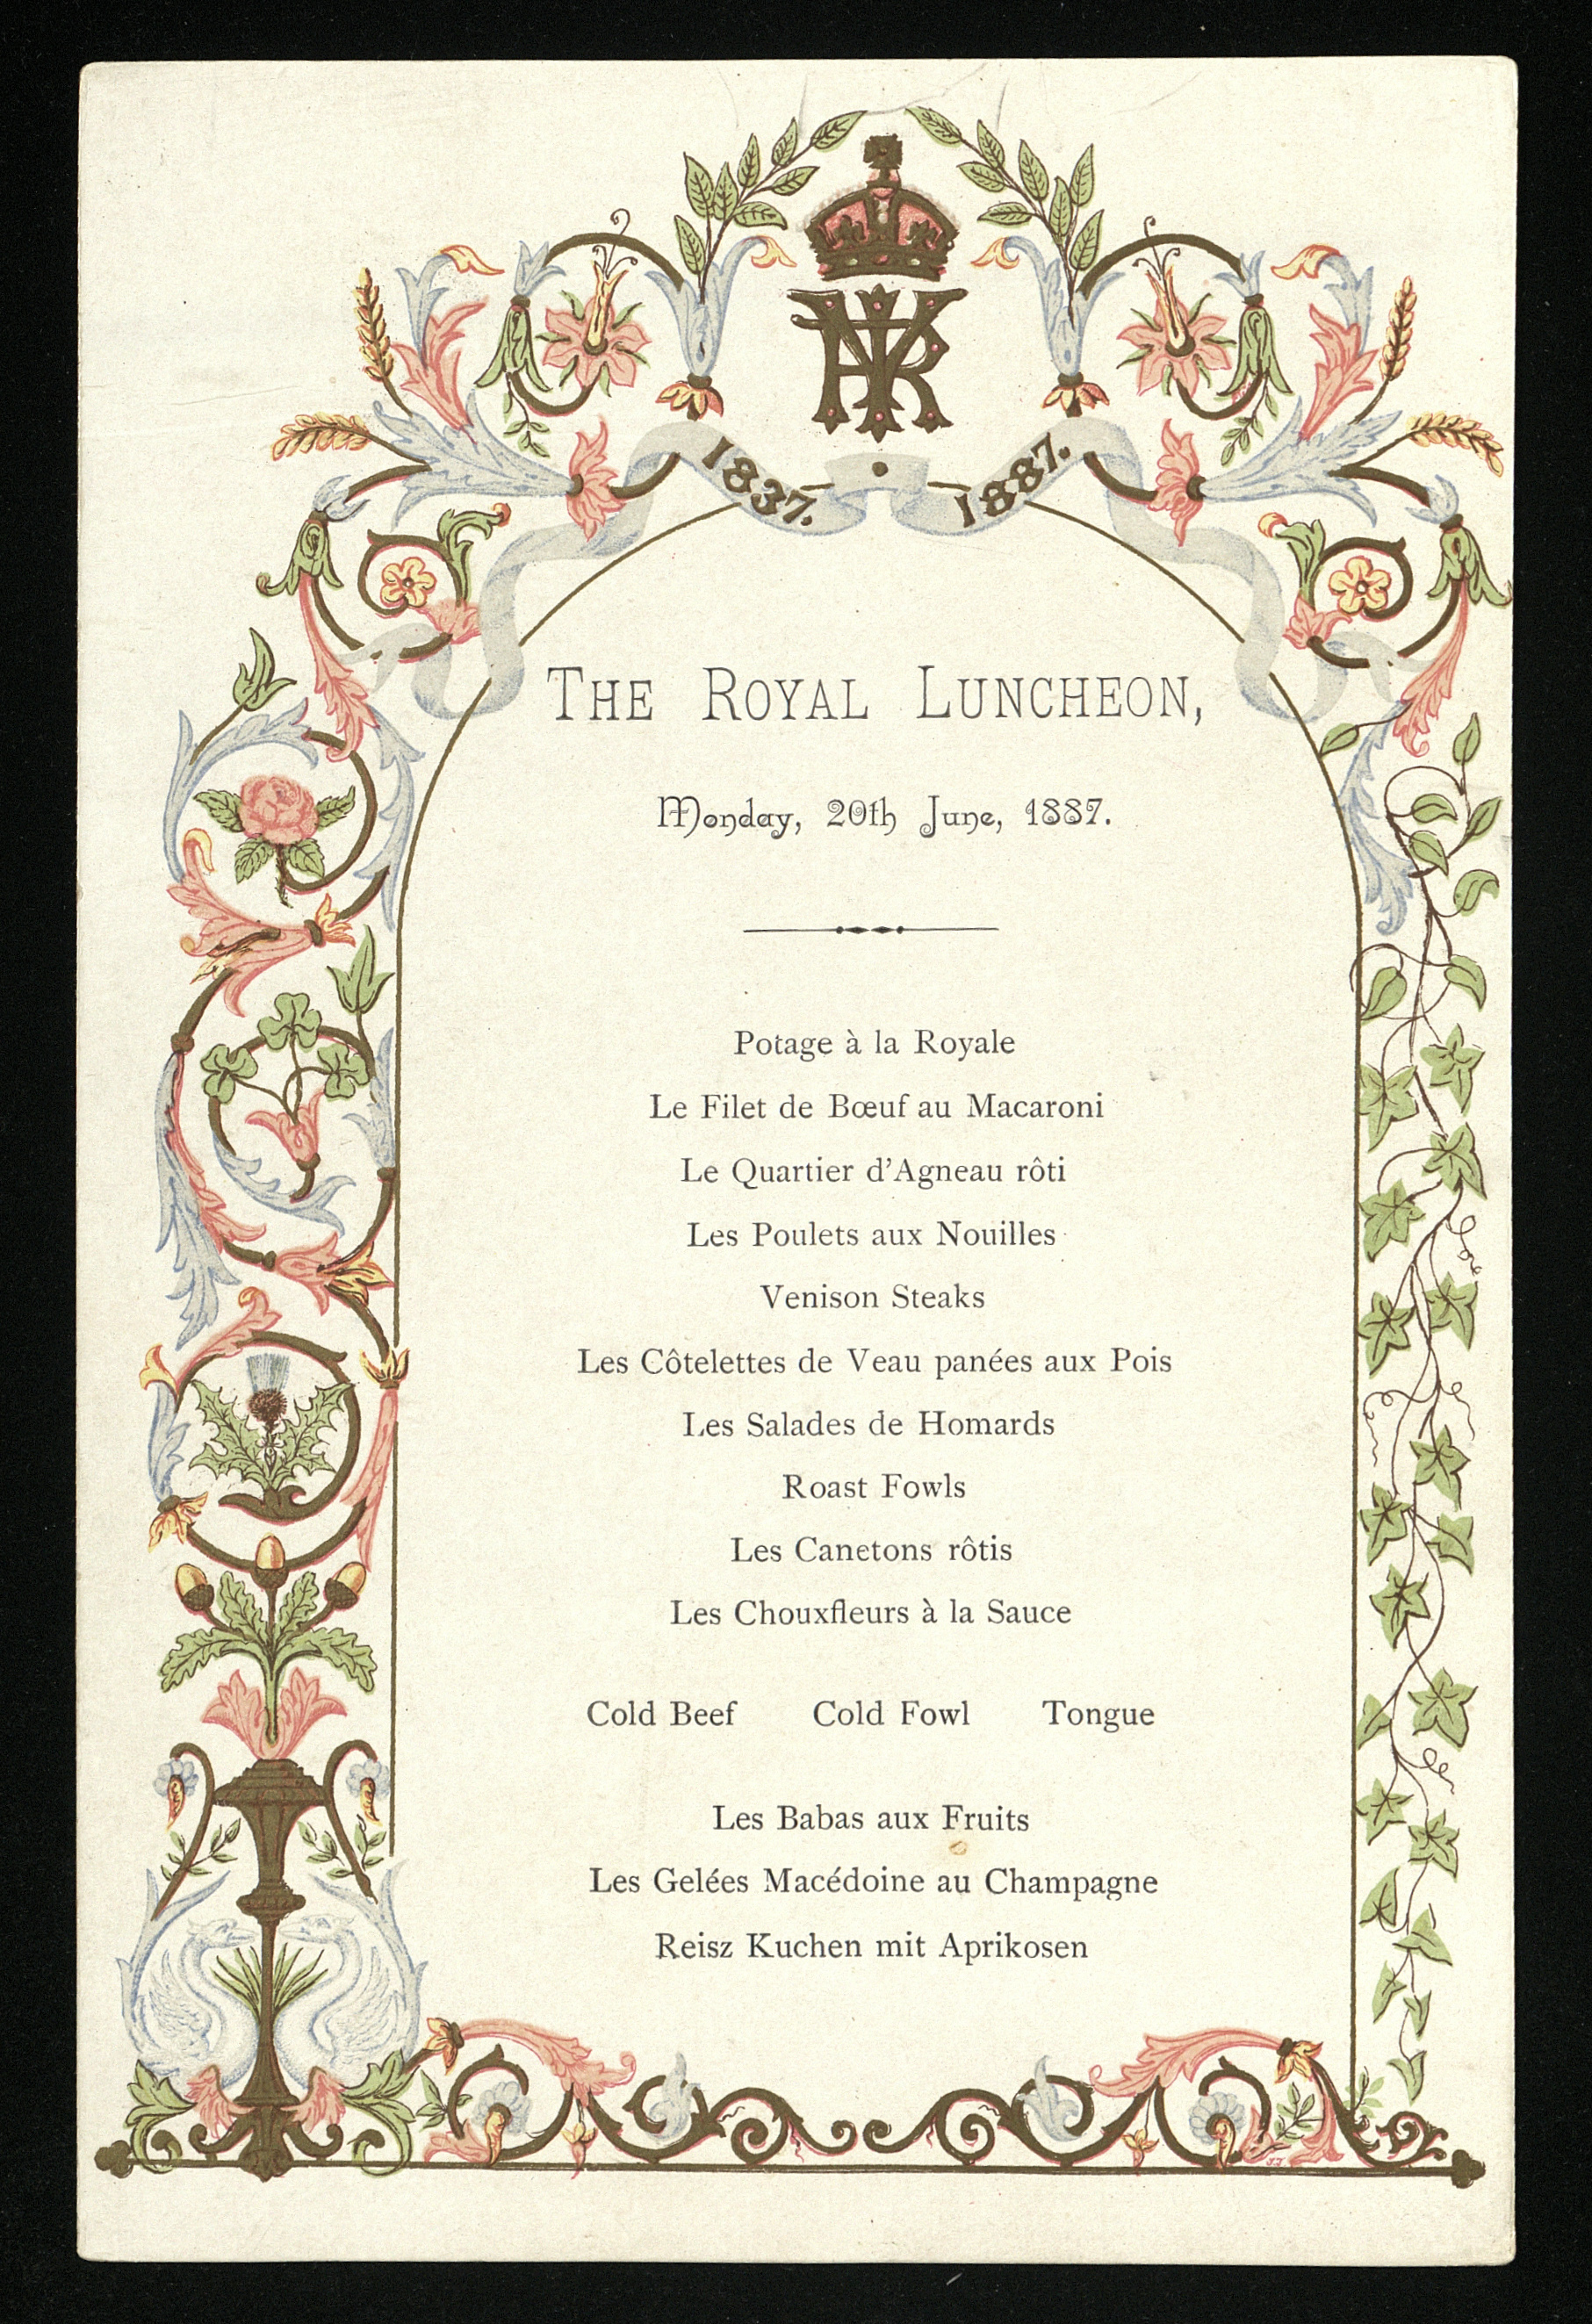 Golden Jubilee lunch menu card